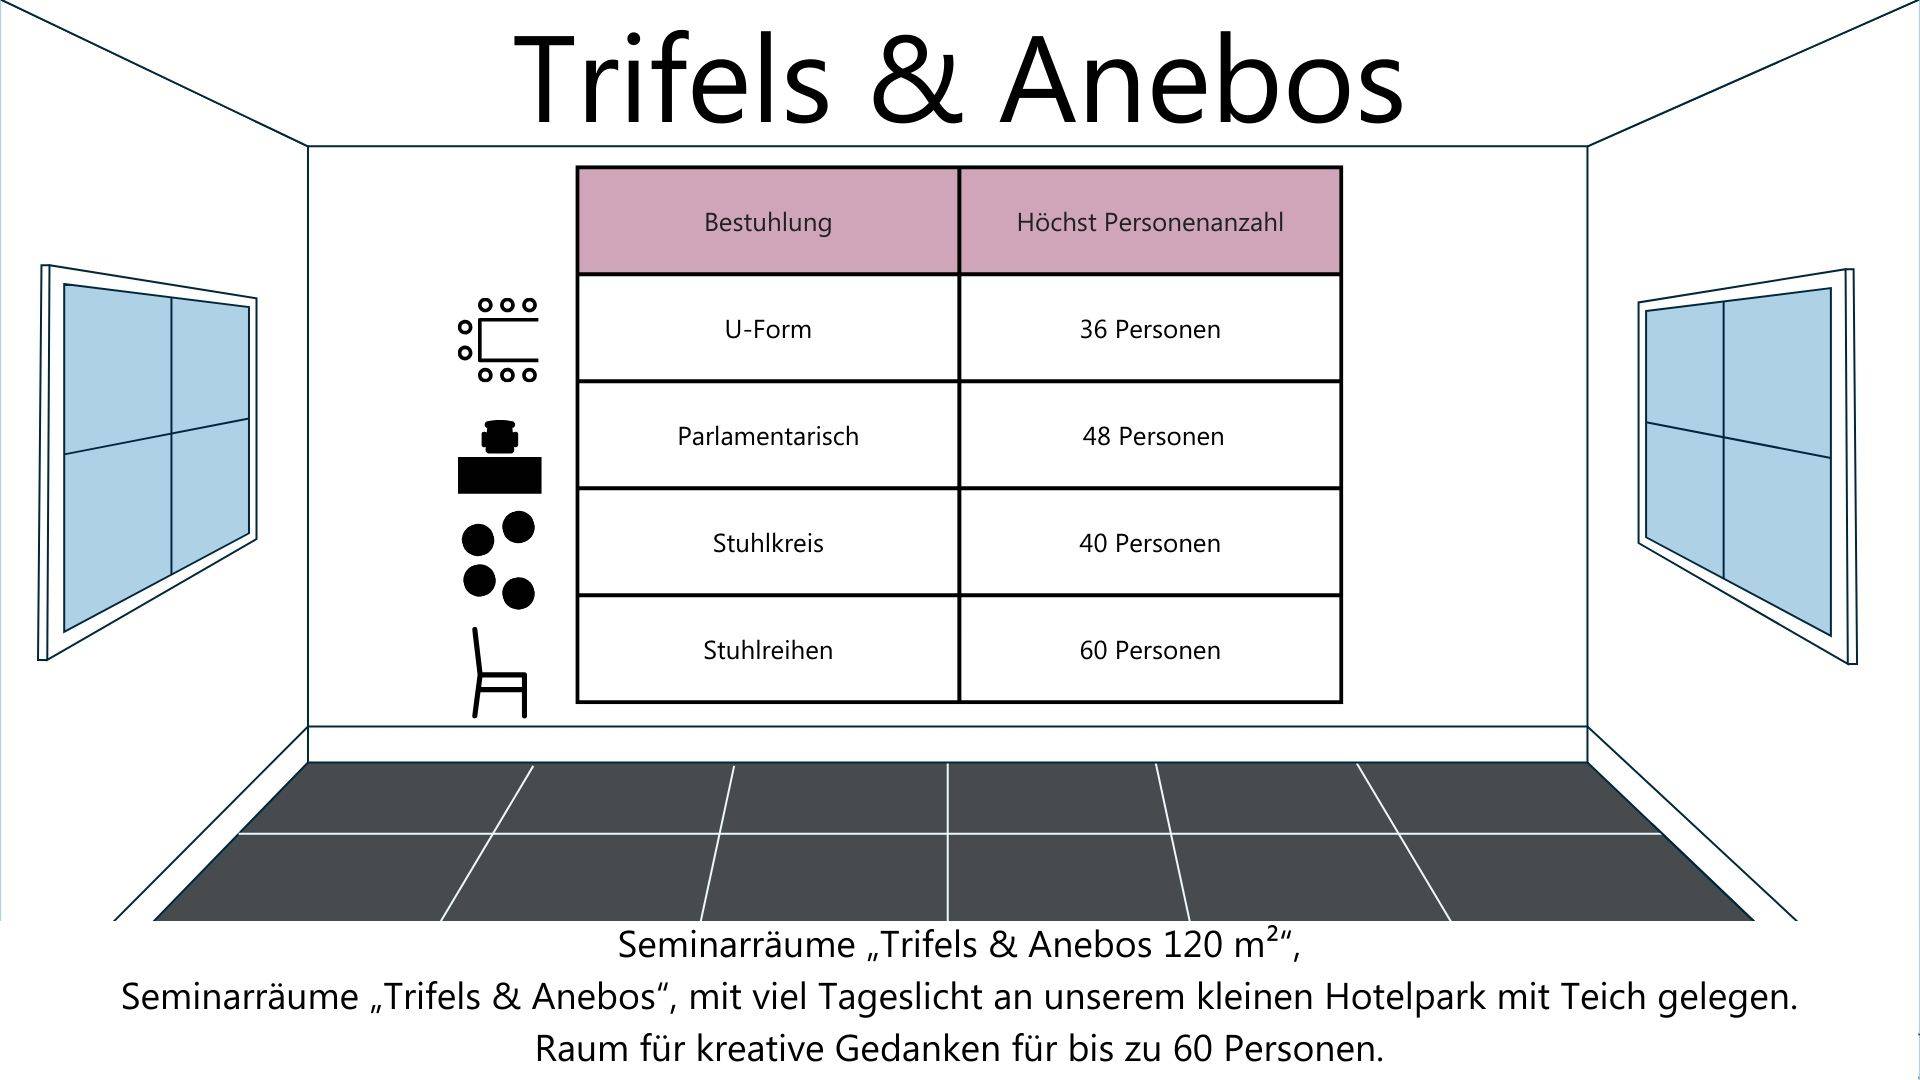 Bis zu 60 Personen: Raumkombination Trifels & Anebos - Leinsweiler Hof